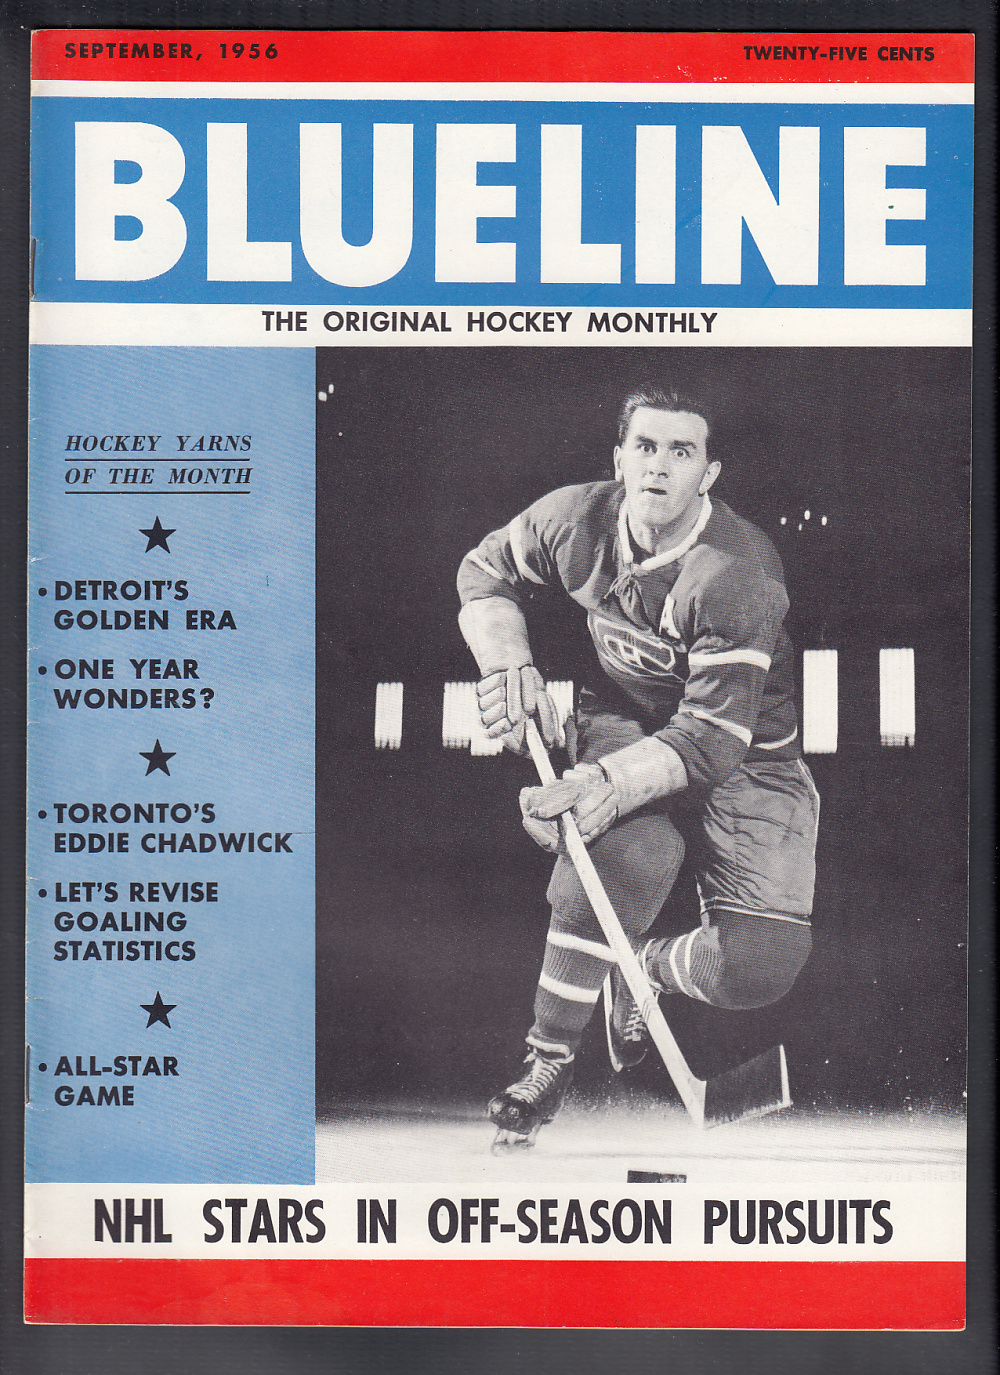 1956 BLUELINE HOCKEY MAGAZINE M. RICHARD ON COVER photo